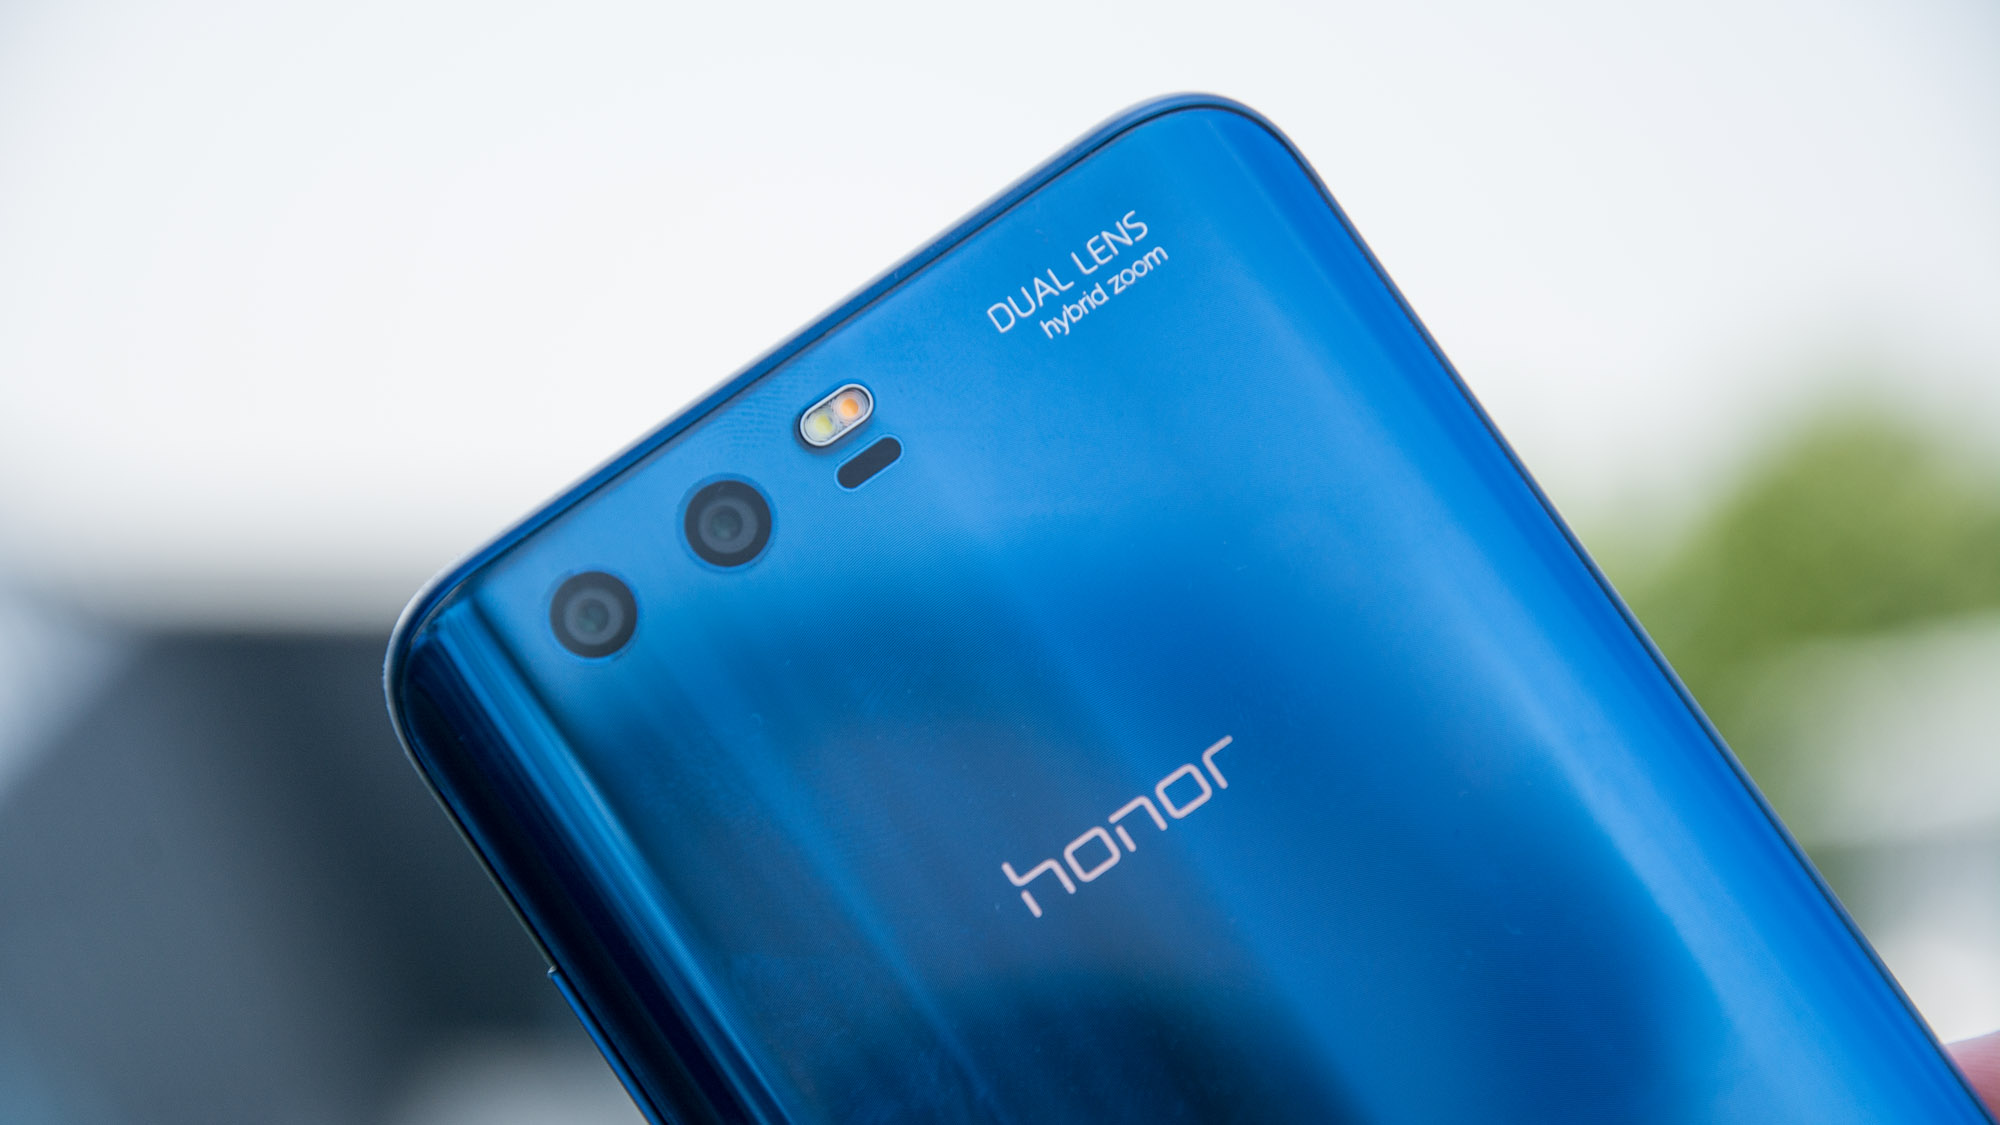 Recenzja Honor 9: wspaniały telefon, który kosztuje teraz tylko 300 funtów